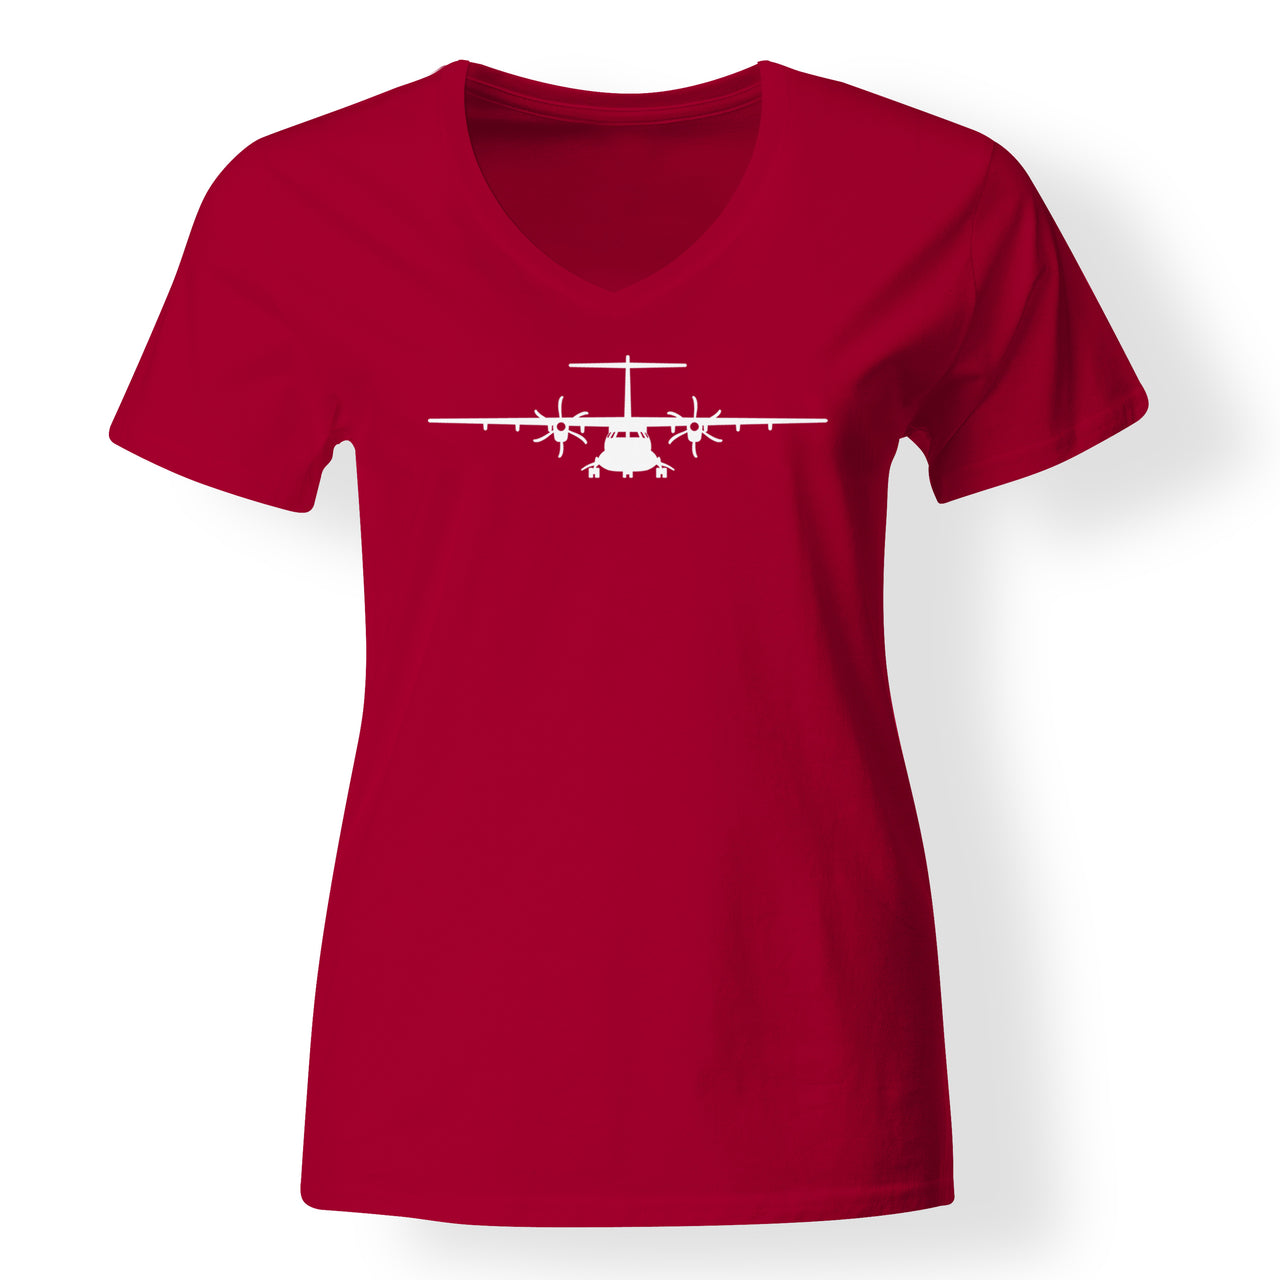 ATR-72 Silhouette Designed V-Neck T-Shirts